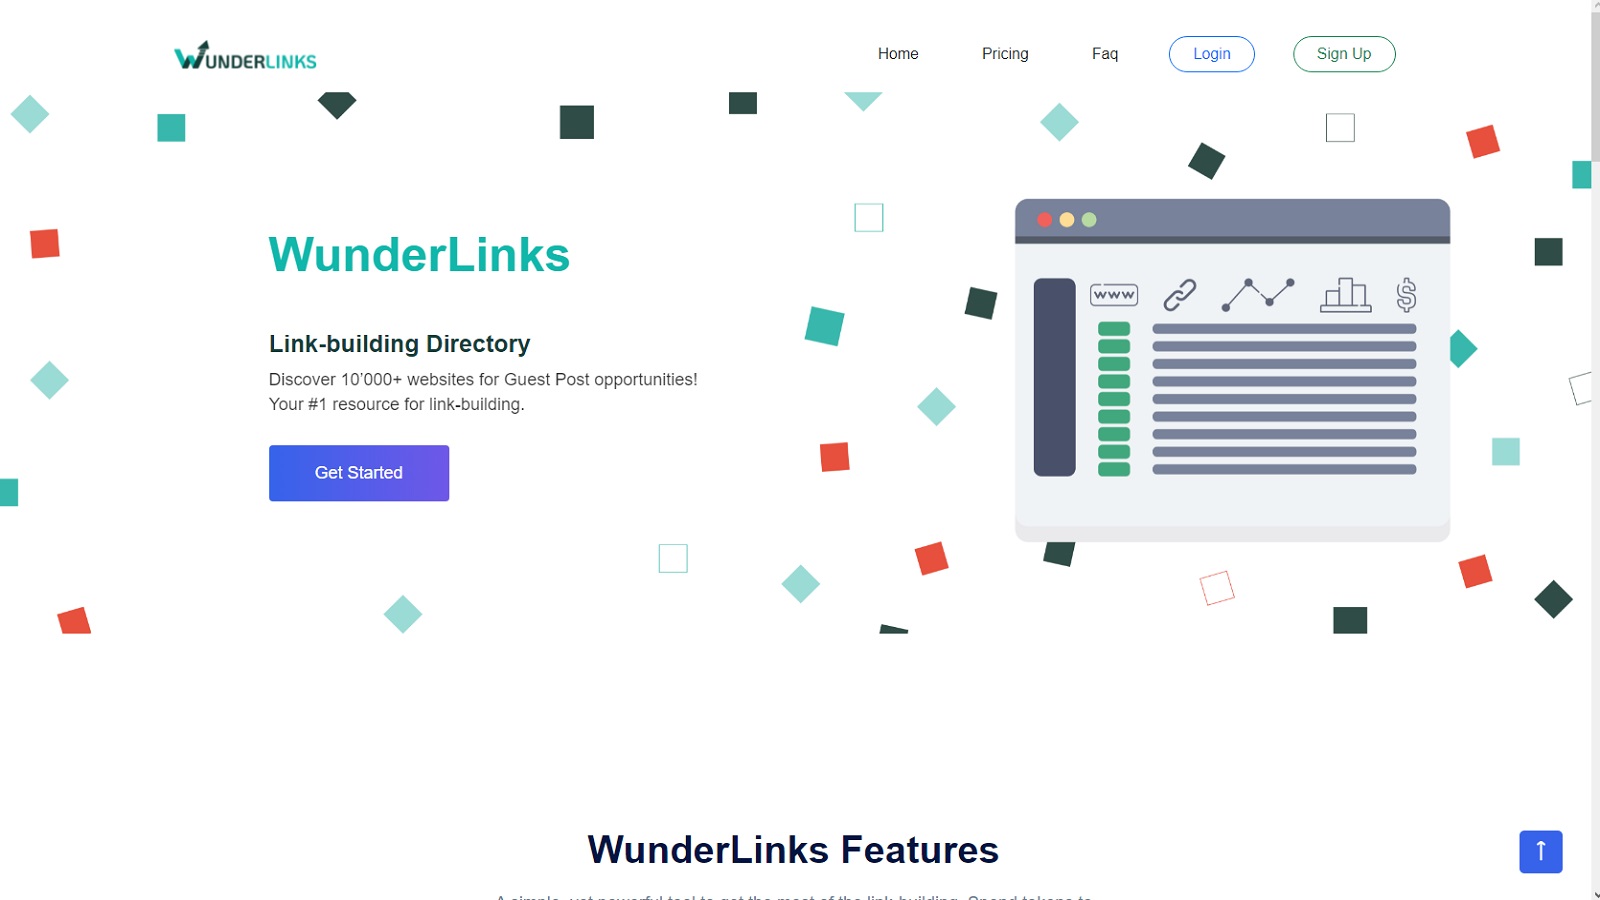 Find detailed information about Wunderlinks